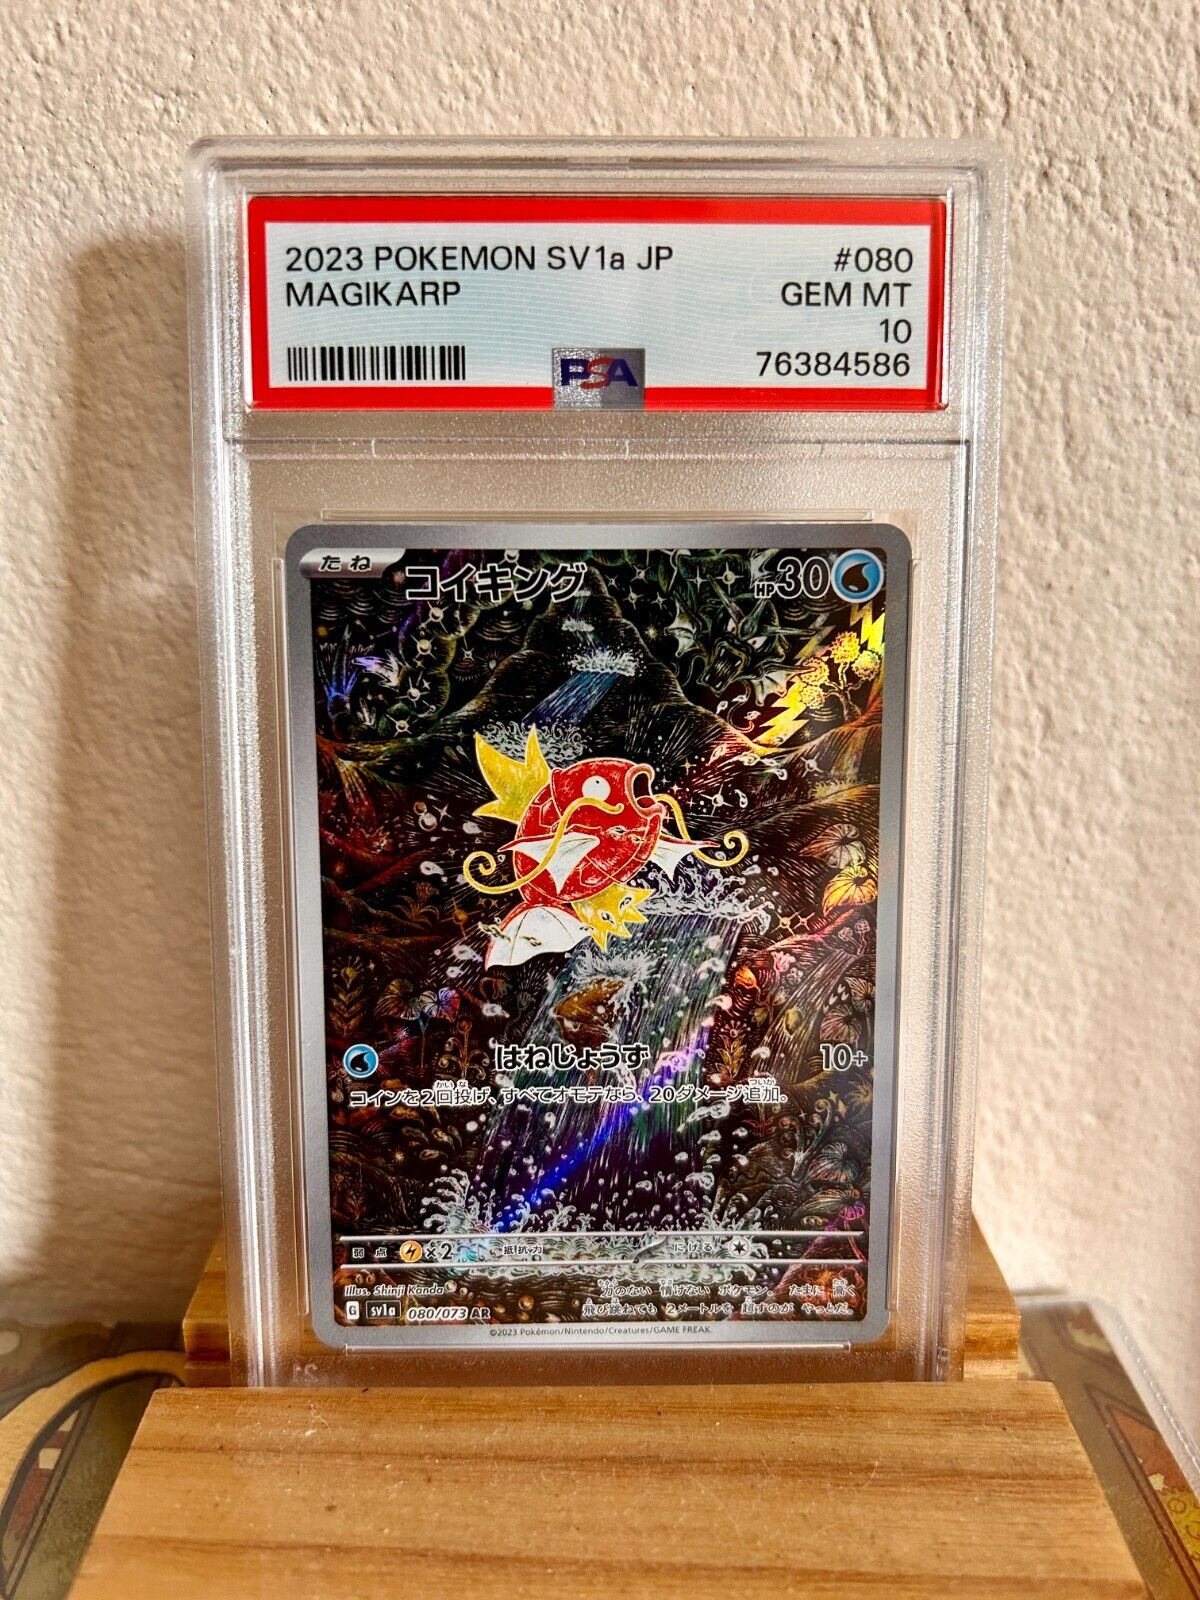 PSA 10 Magikarp 2023 Pokemon Card 080/073 Triplet Beat Japanese